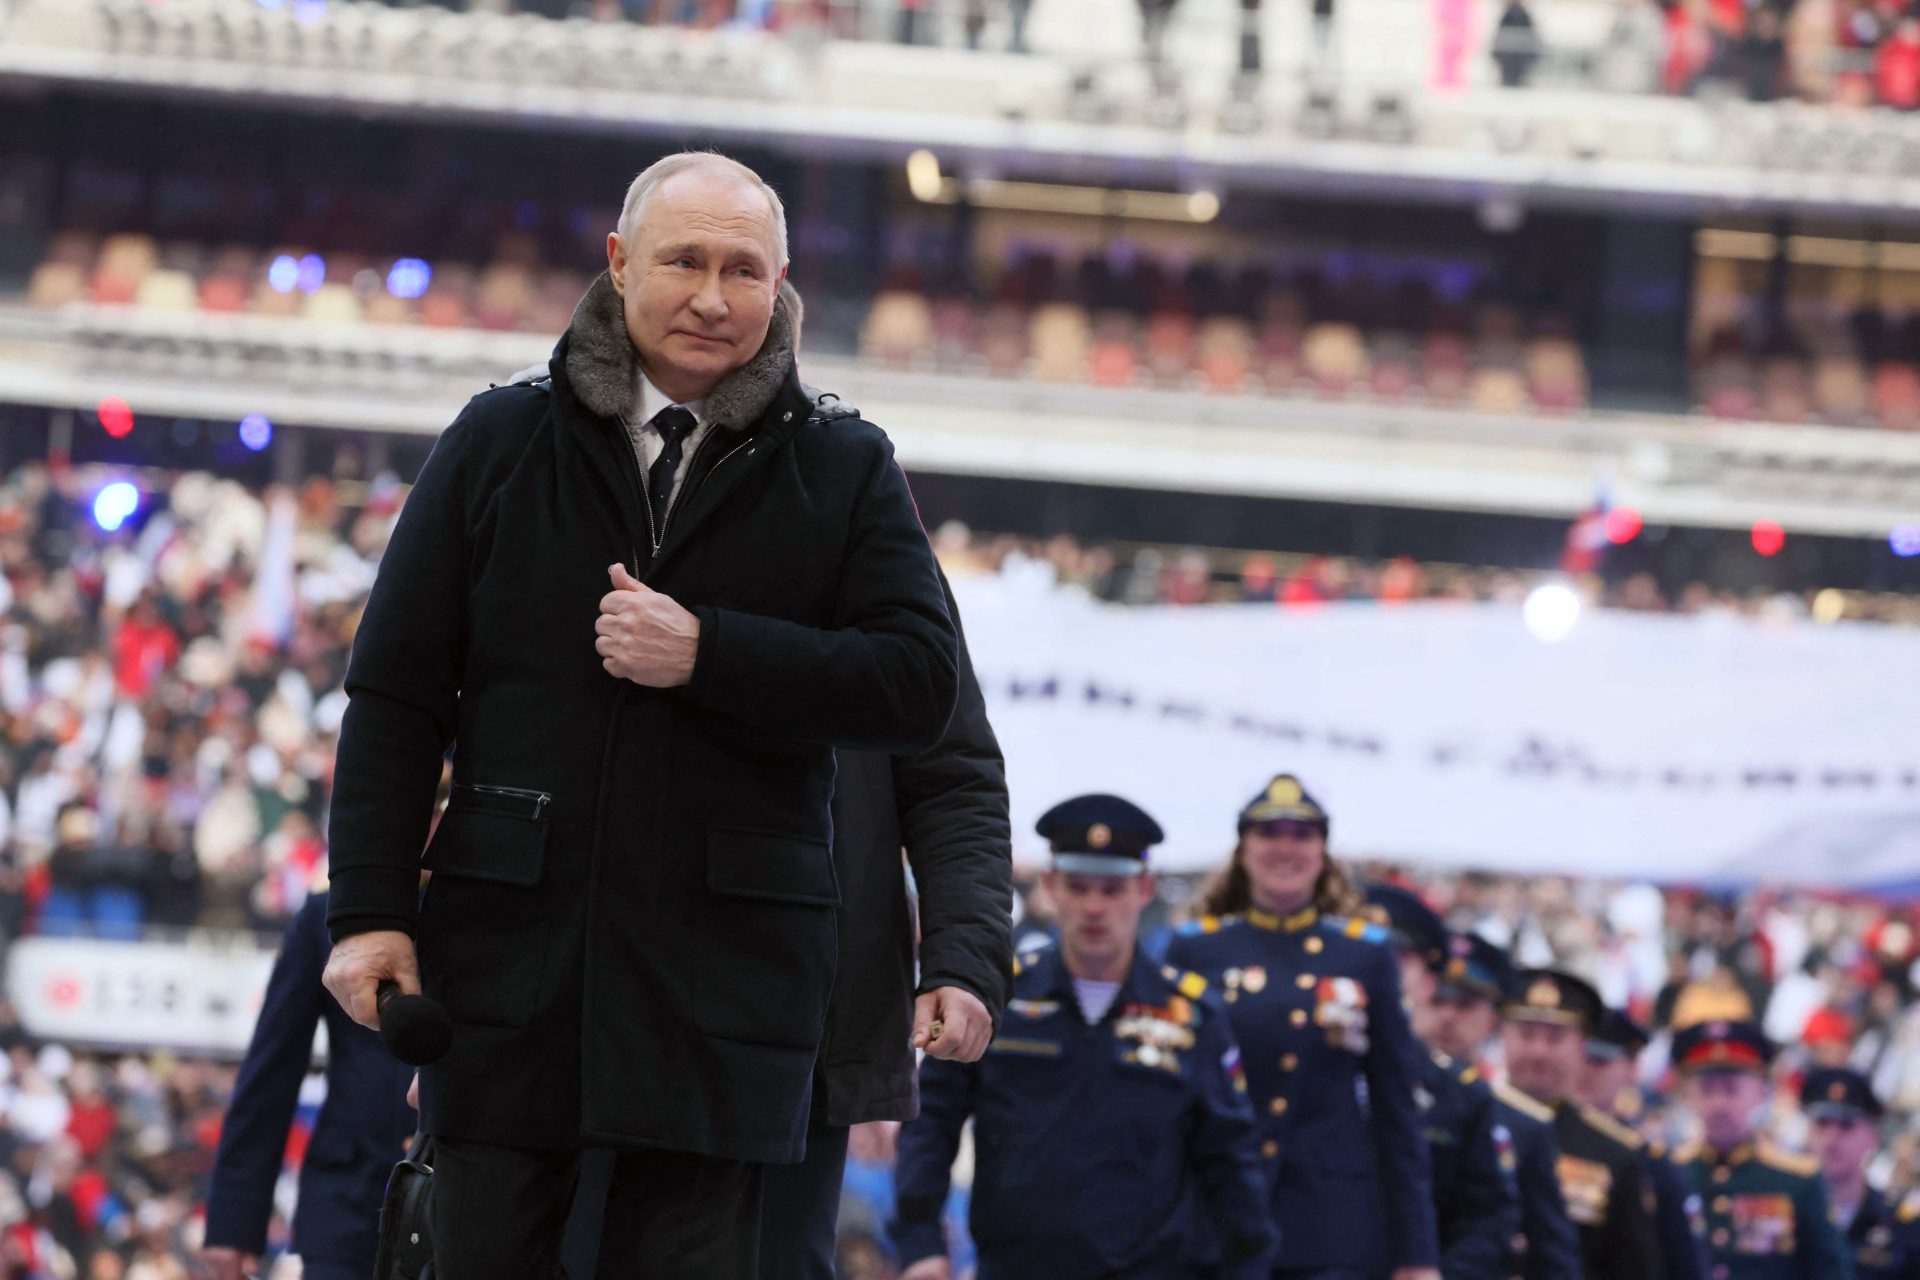 IJzeren greep Poetin verzwakt?